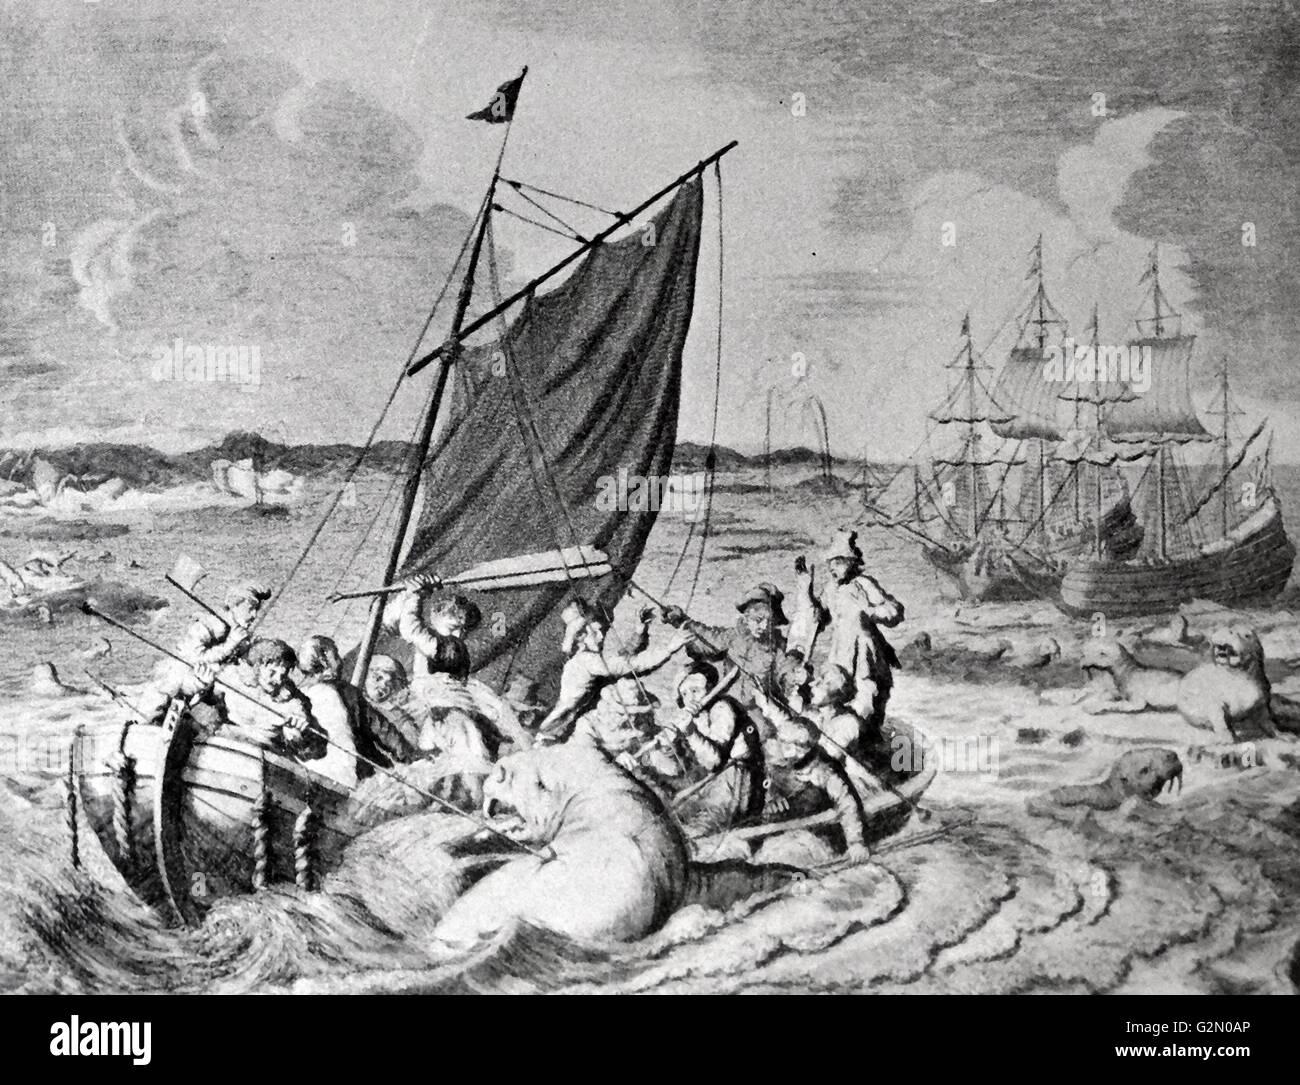 Caccia al tricheco nova Zembla 1596. Willem Barentsz (William Barents Barentz o) (c. 1550 - 20 giugno 1597) navigatore olandese, cartografo, e Arctic explorer. Egli è andato in tre spedizioni all'estremo nord nella ricerca di un passaggio a nordest. Durante la sua terza spedizione l equipaggio fu arenati su Nova Zembla per quasi un anno. Barentsz morì sul viaggio di ritorno nel 1597. Nel XIX secolo il Mare di Barents è stato chiamato dopo di lui. Foto Stock